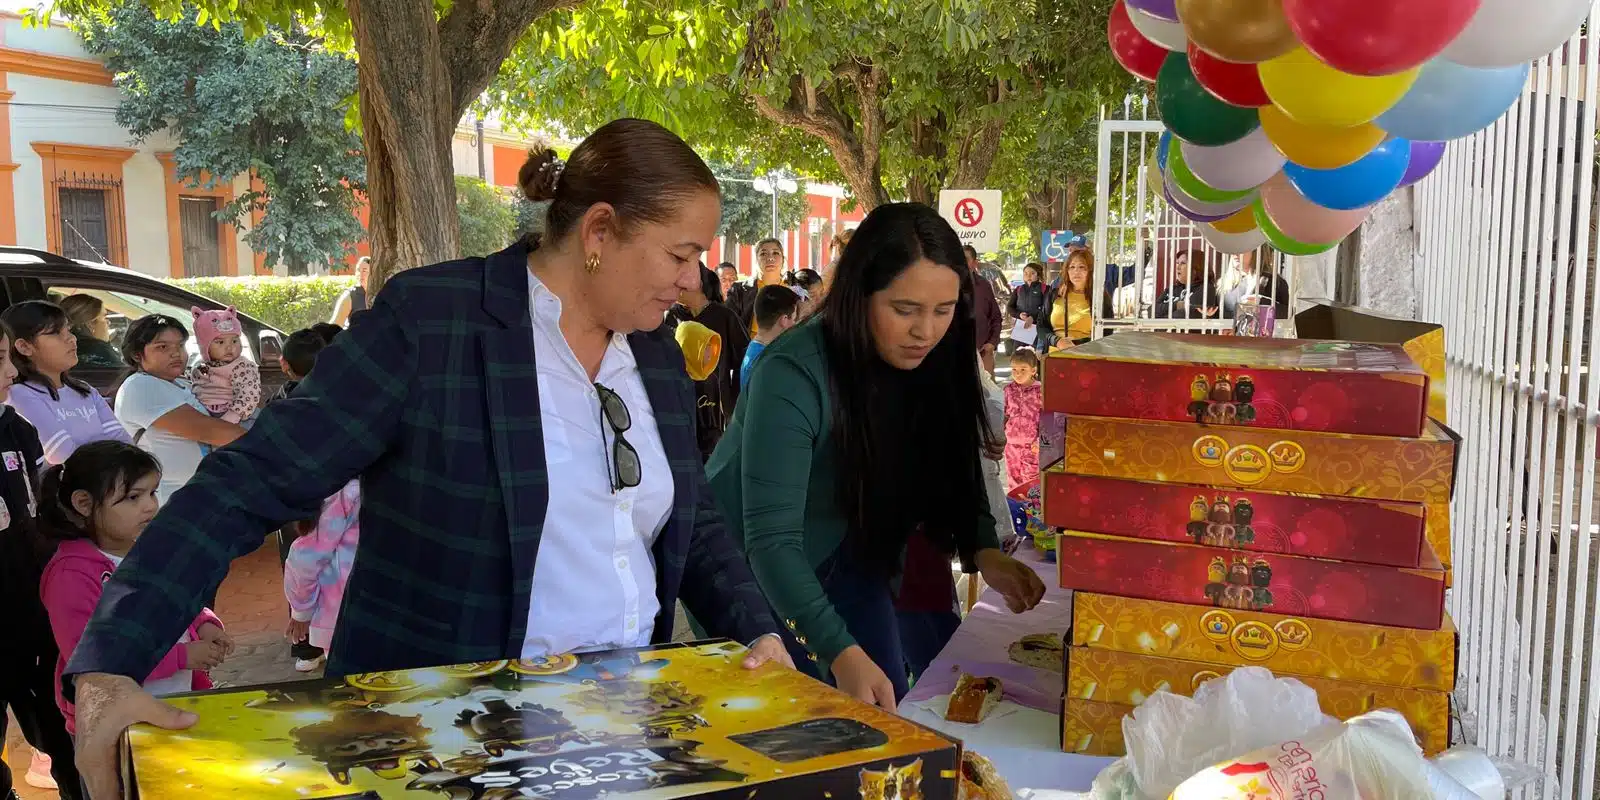 Tradicional partida de rosca y entrega de dulces y juguetes por parte de DIF El Fuerte